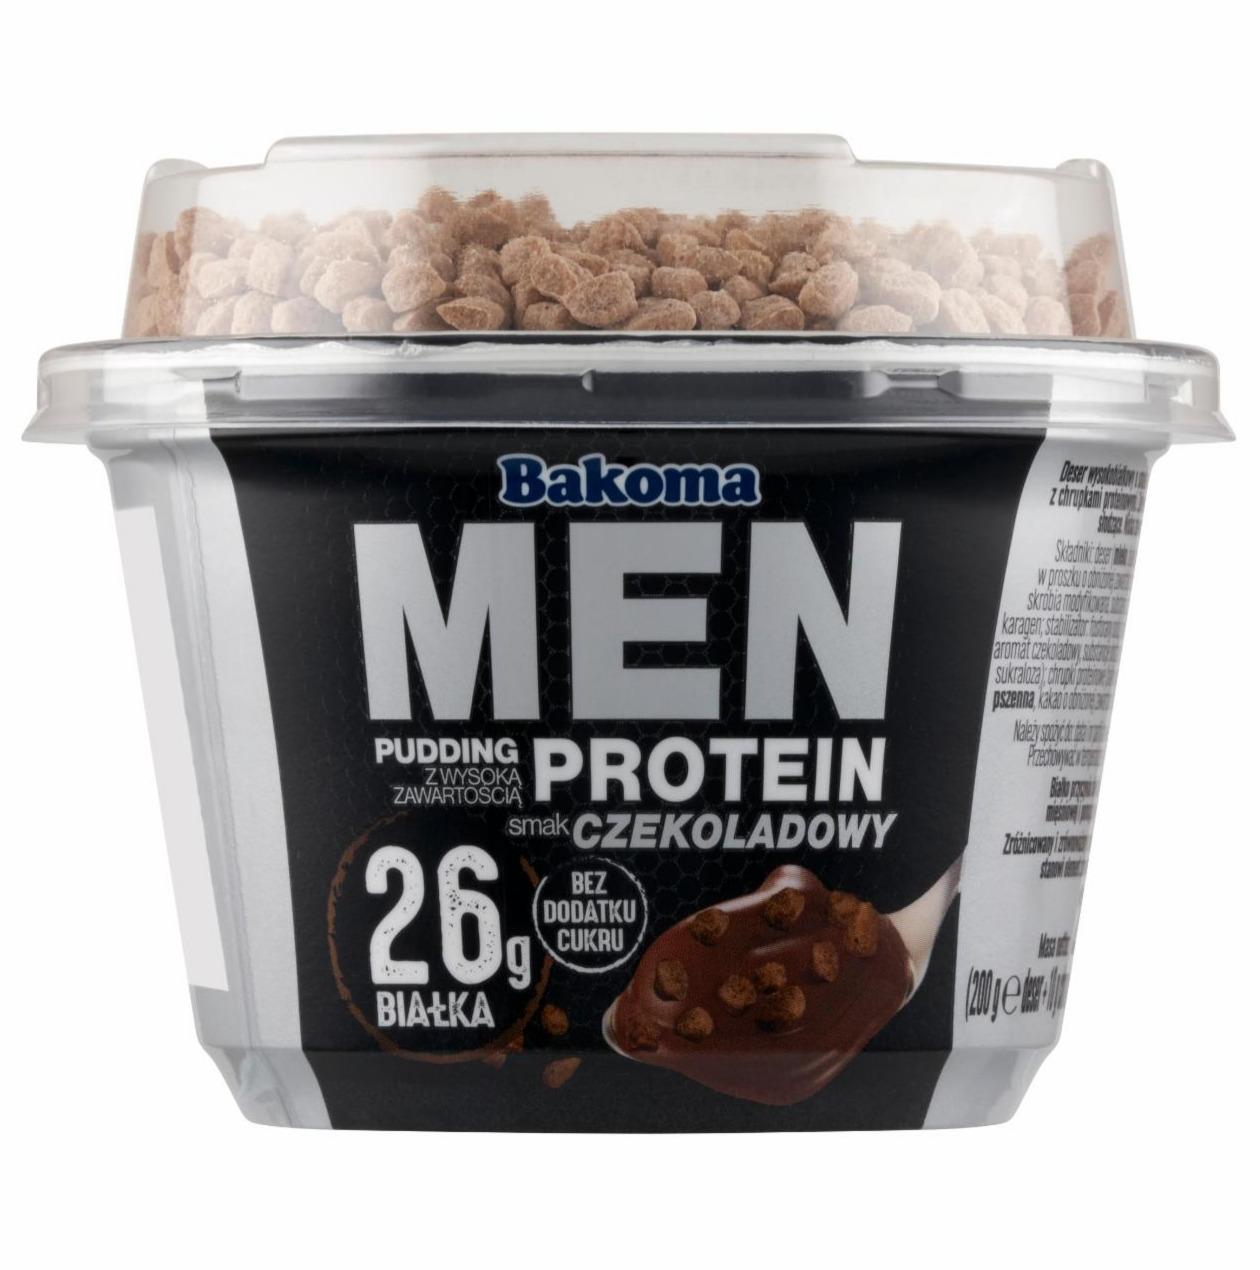 Zdjęcia - Pudding z wysoką zawartością protein smak czekoladowy Bakoma Men